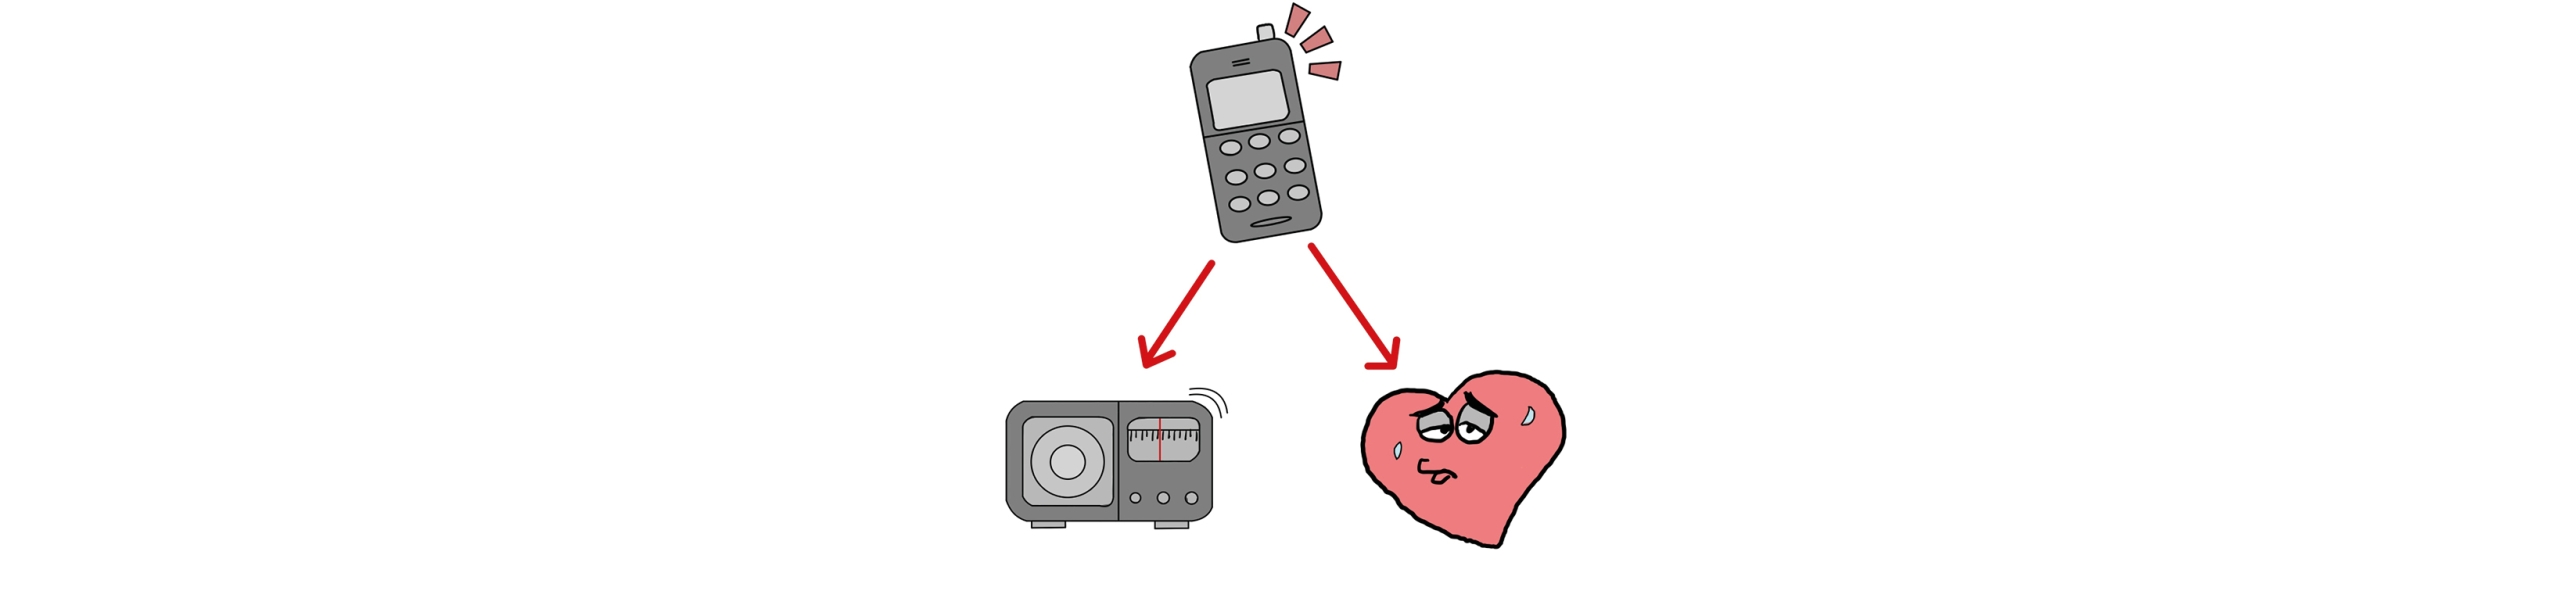 Herzschrittmacher und Radio als Störsenken